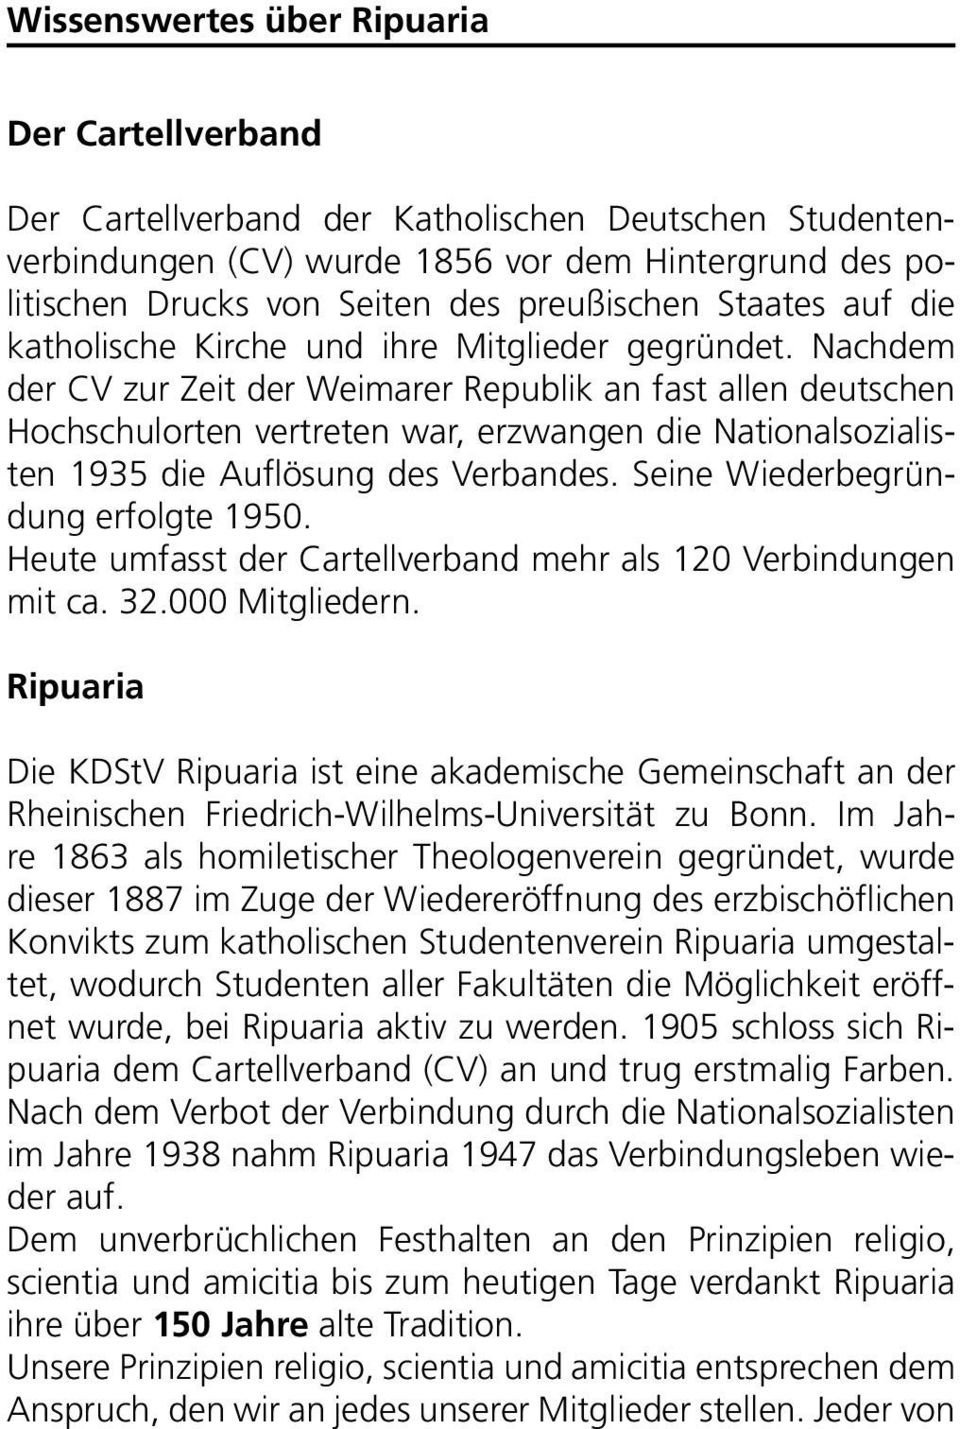 Nachdem der CV zur Zeit der Weimarer Republik an fast allen deutschen Hchschulrten vertreten war, erzwangen die Natinalszialisten 1935 die Auflösung des Verbandes. Seine Wiederbegründung erflgte 1950.